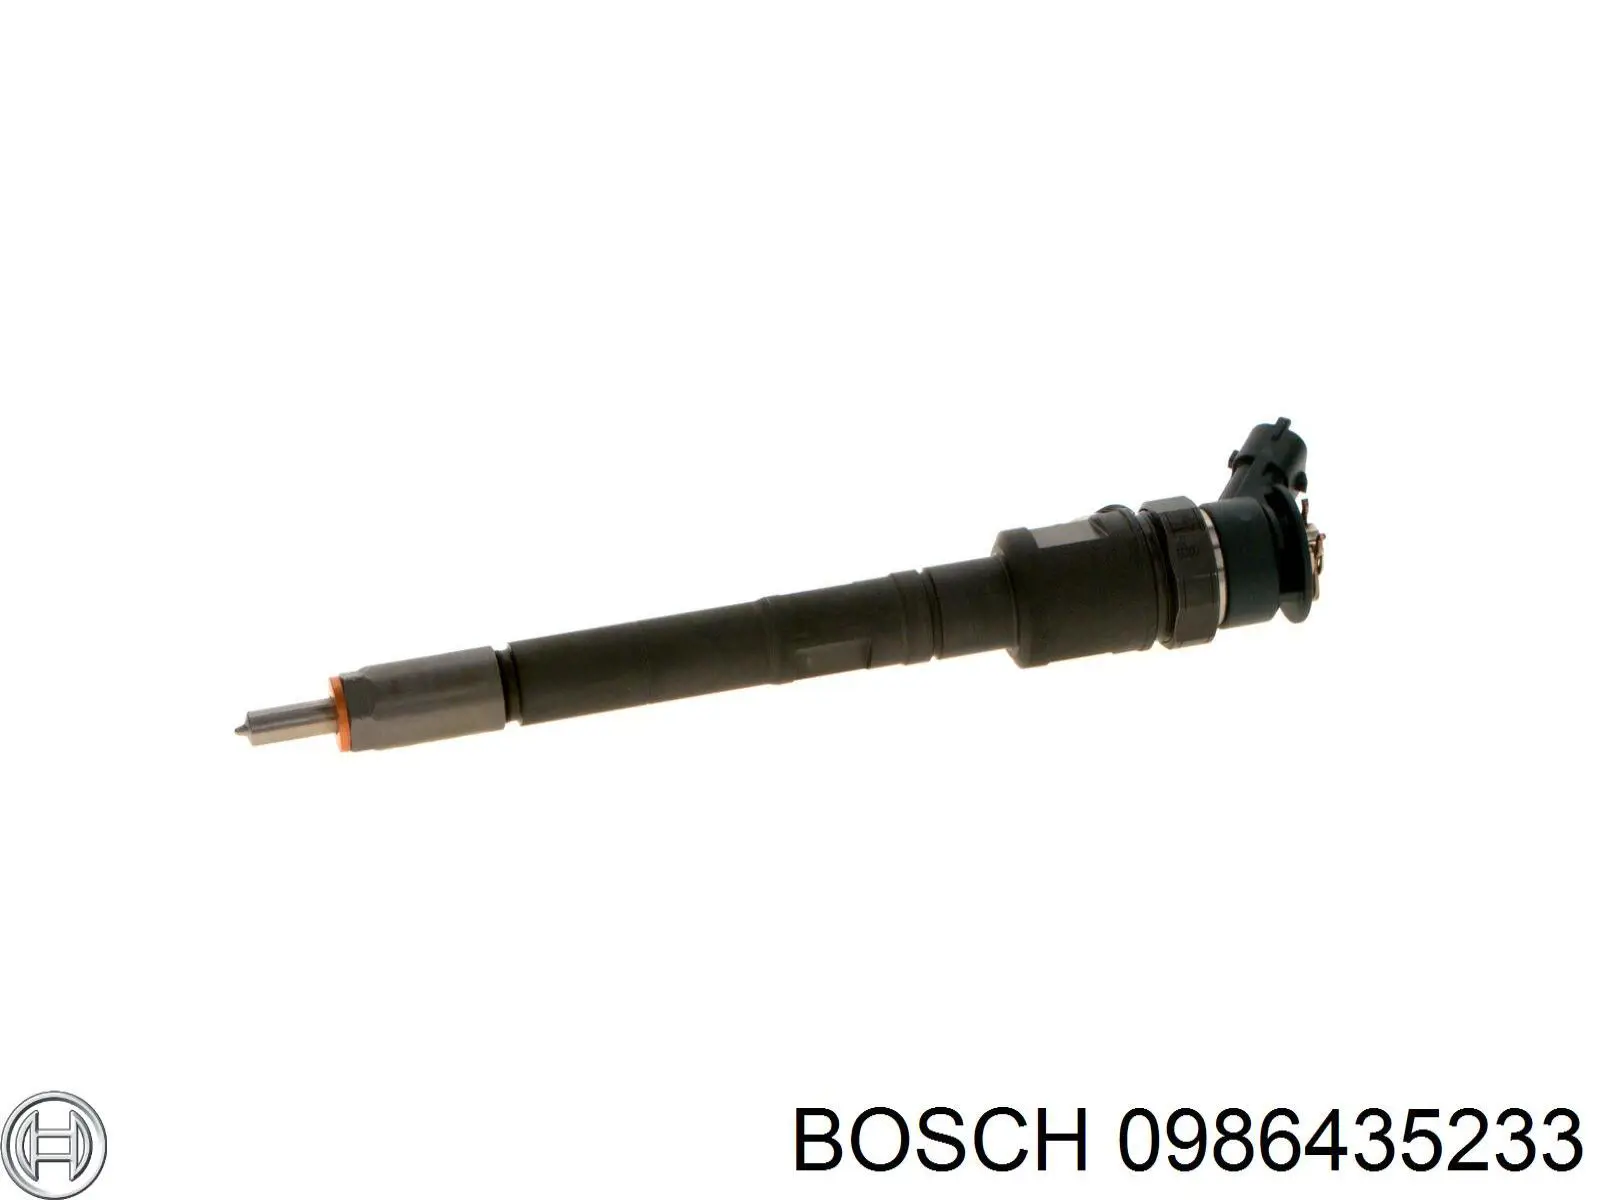 0445110352 Bosch injetor de injeção de combustível